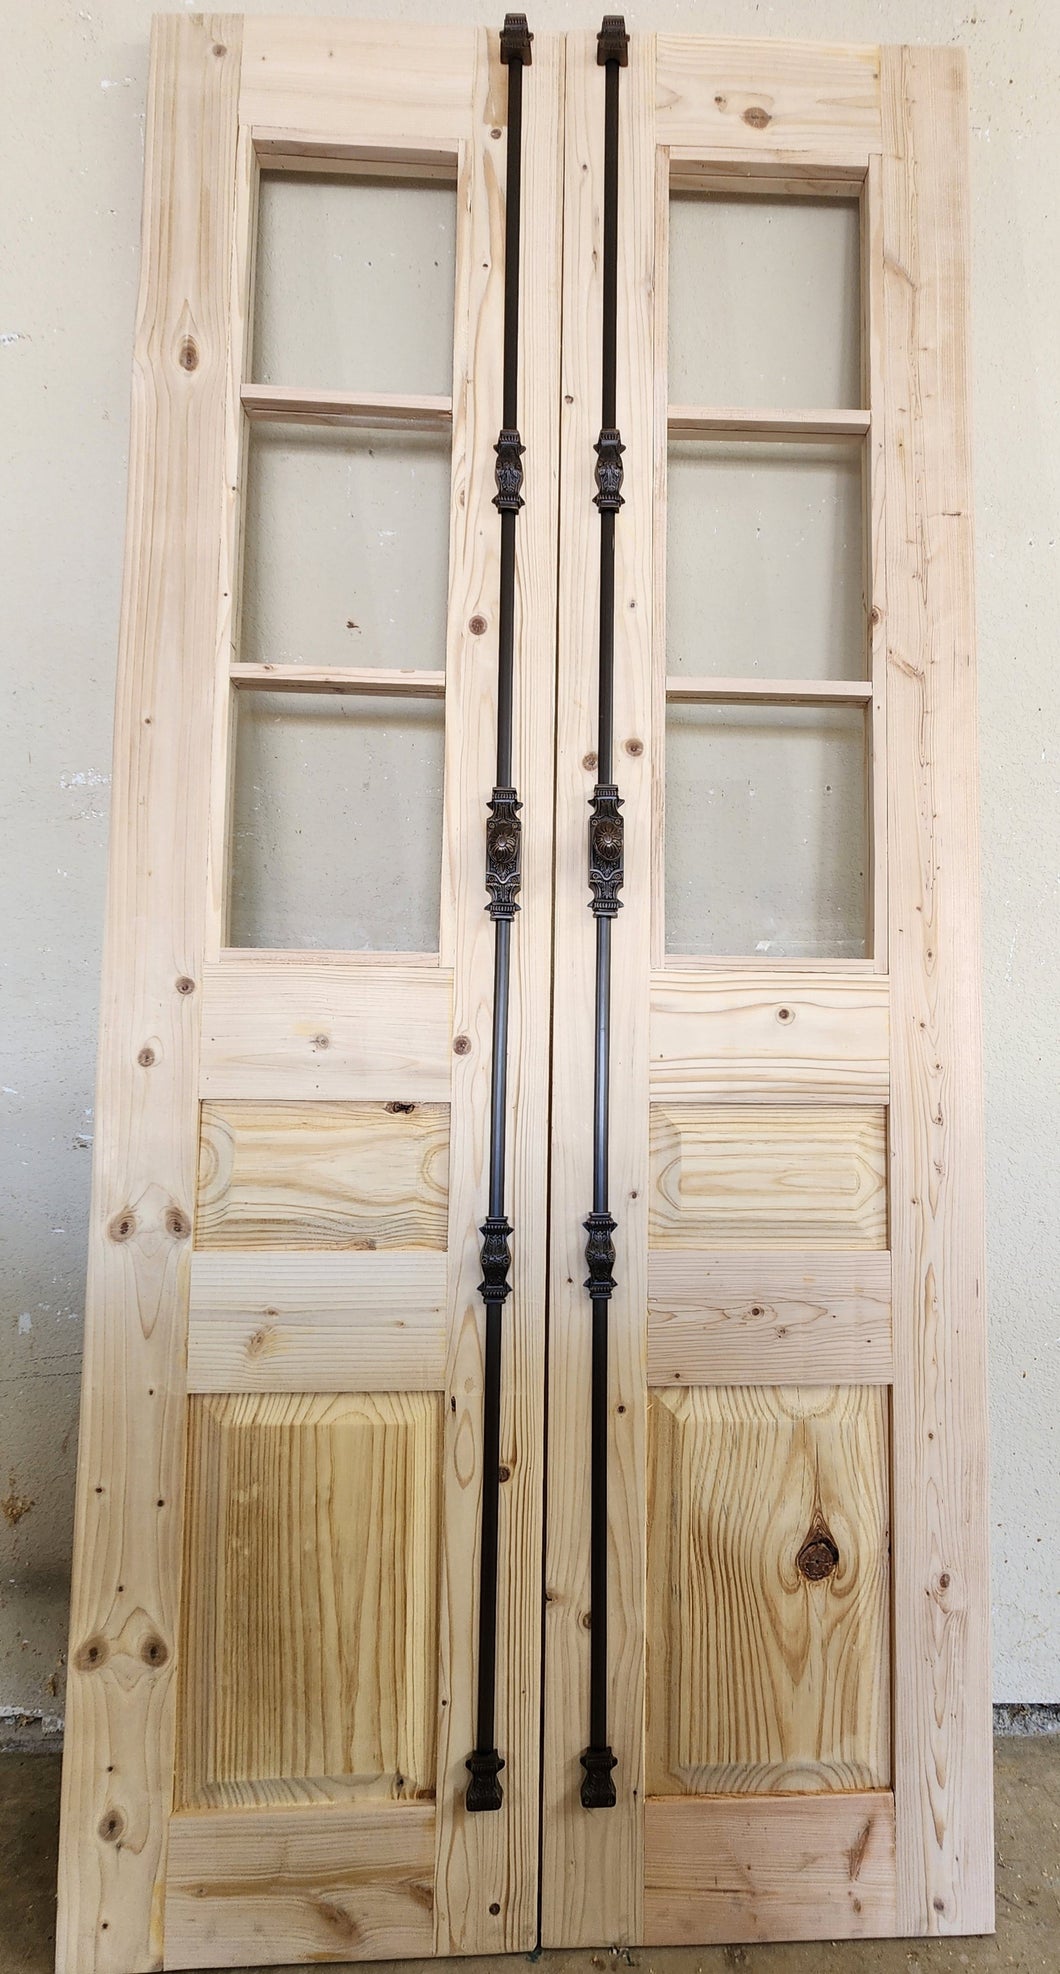 Custom Built: 3 Lite Small Large Panel Style Set of Doors Unfinished, Slabs Only   (Glass French Doors, Sliding Barn Door, Hinge Doors, Pocket Door, Pantry Doors, Antique Doors, Custom Interior Doors)